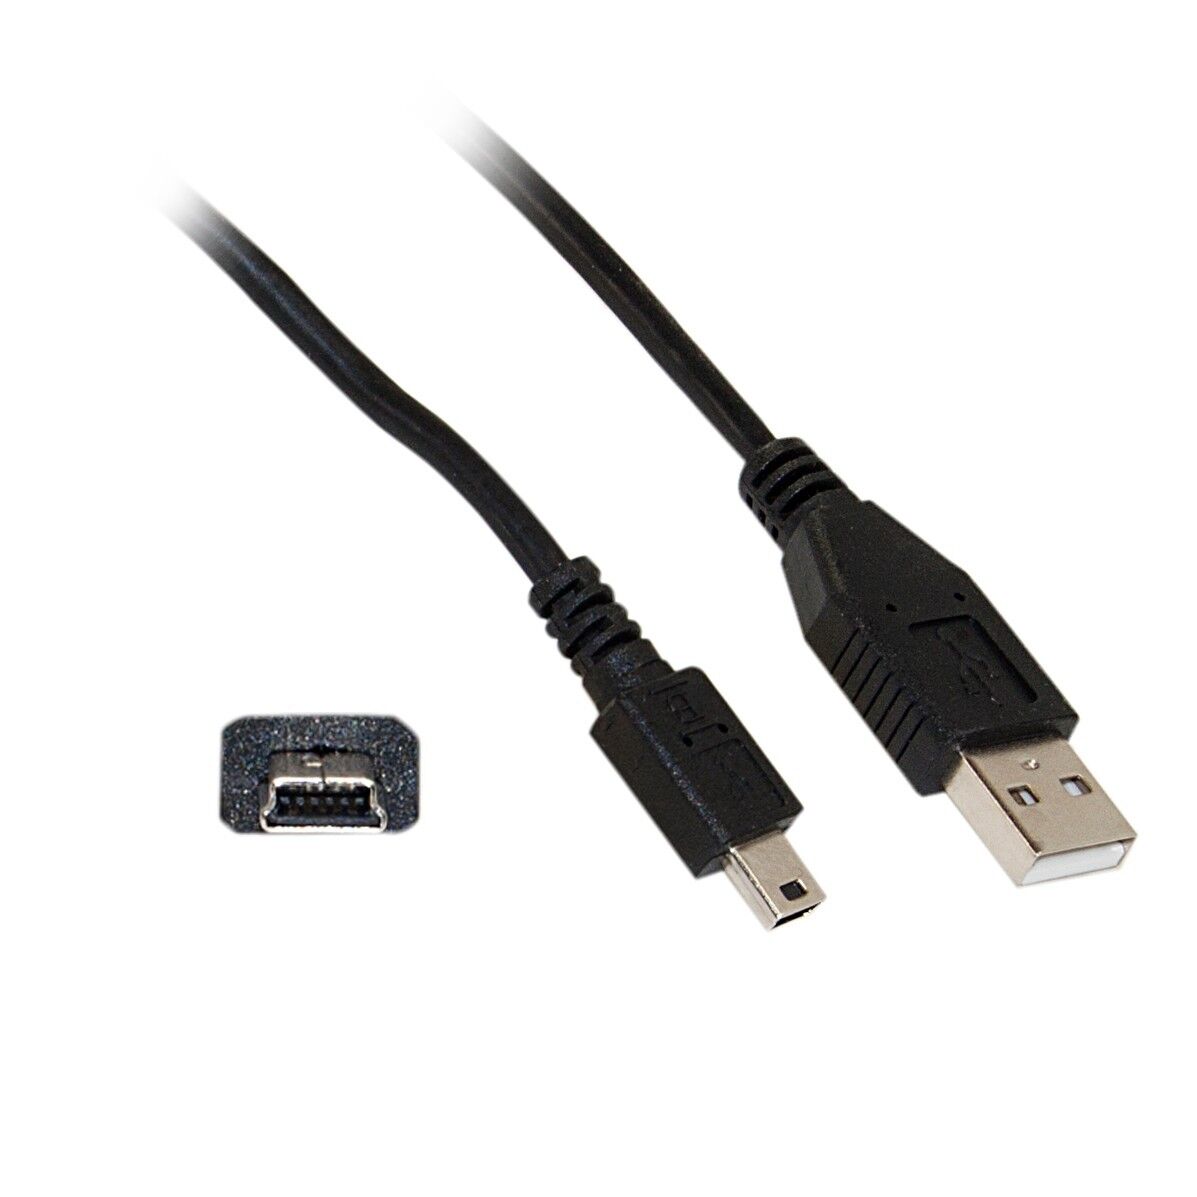 1.5ft Mini USB 2.0 Cable Black Type A Male to 5Pin Mini-B Male   10UM-02101.5BK